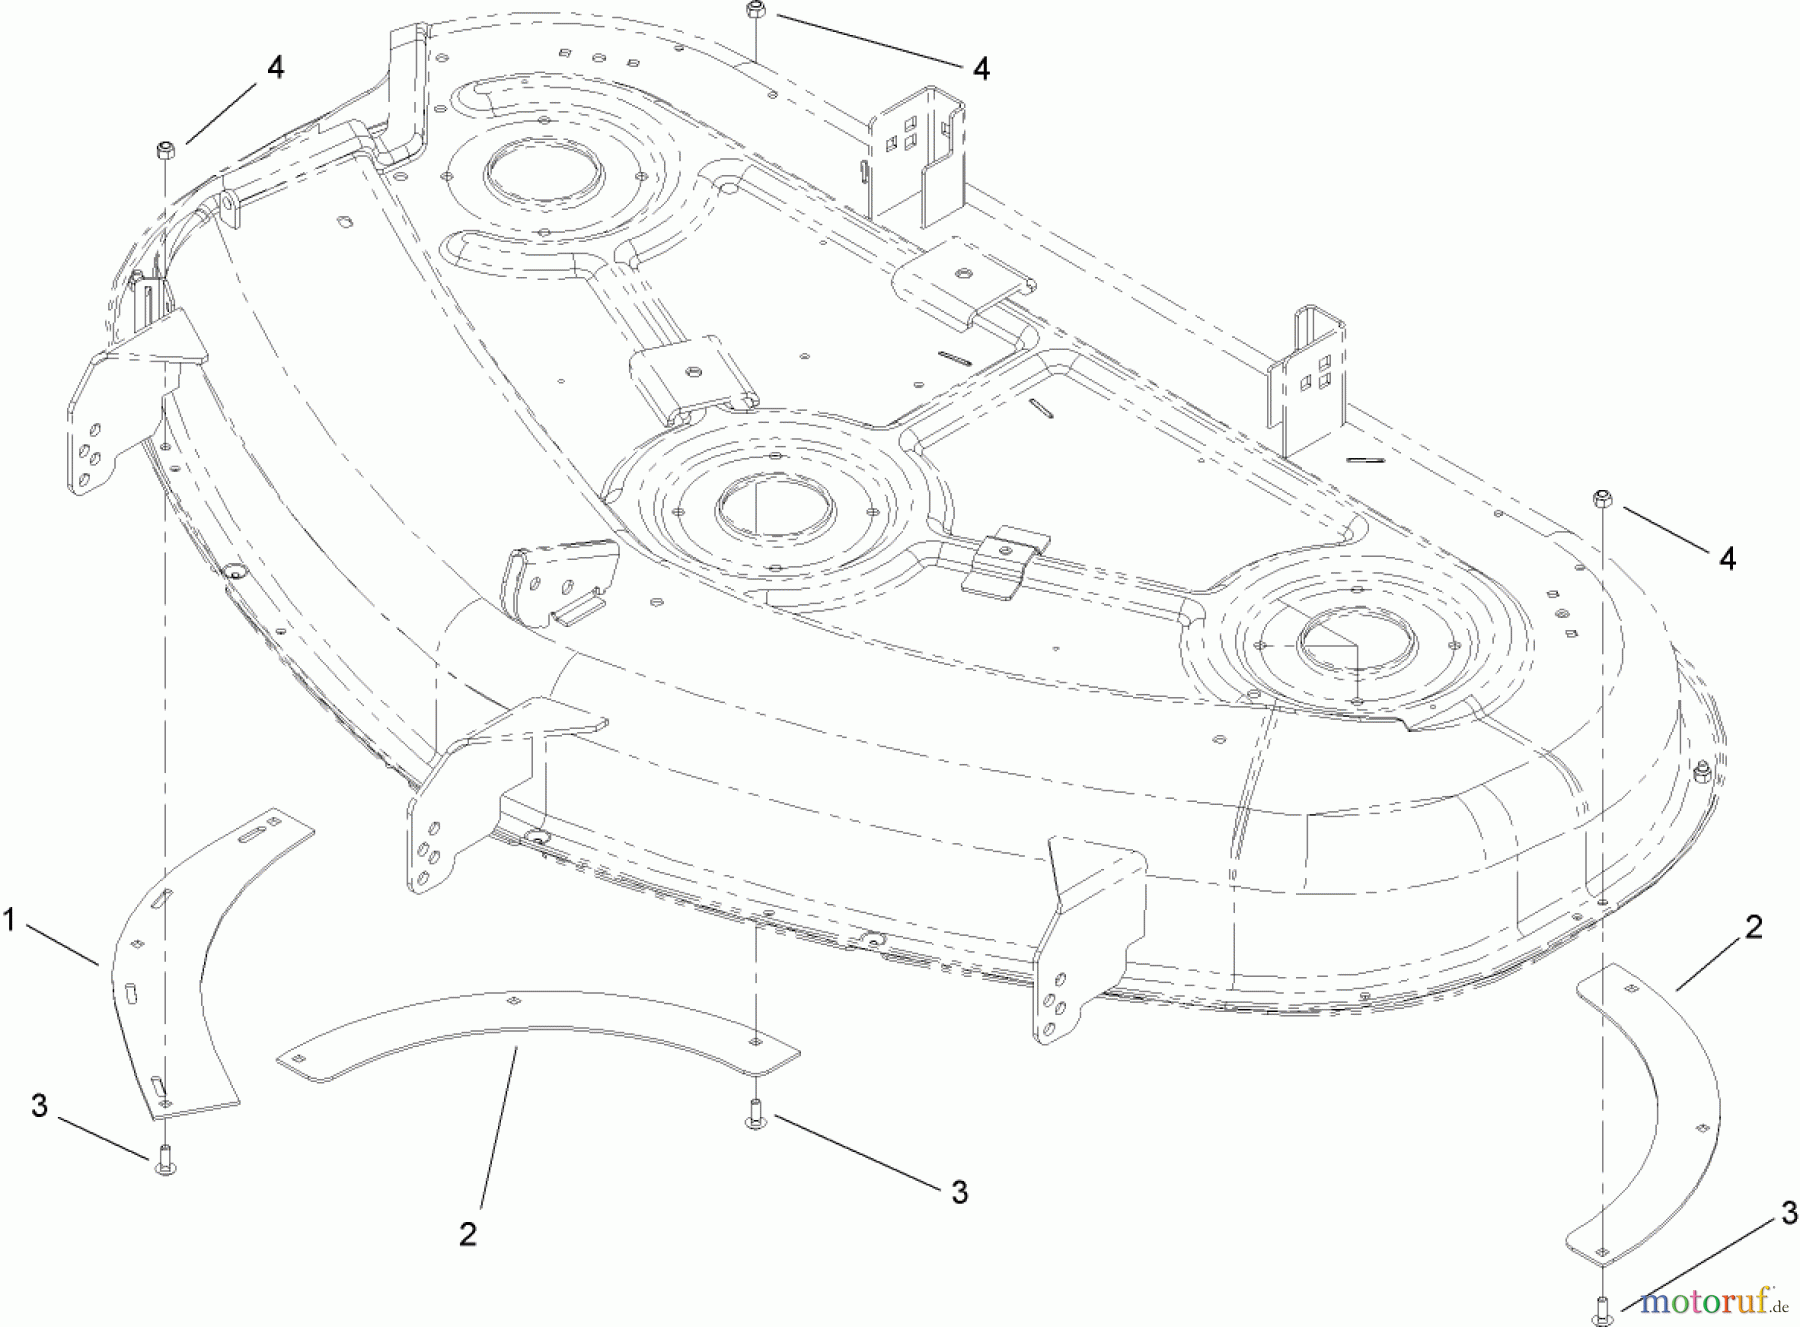  Toro Neu Accessories, Mower 114-1608 - Toro Deck Ring Kit, 50